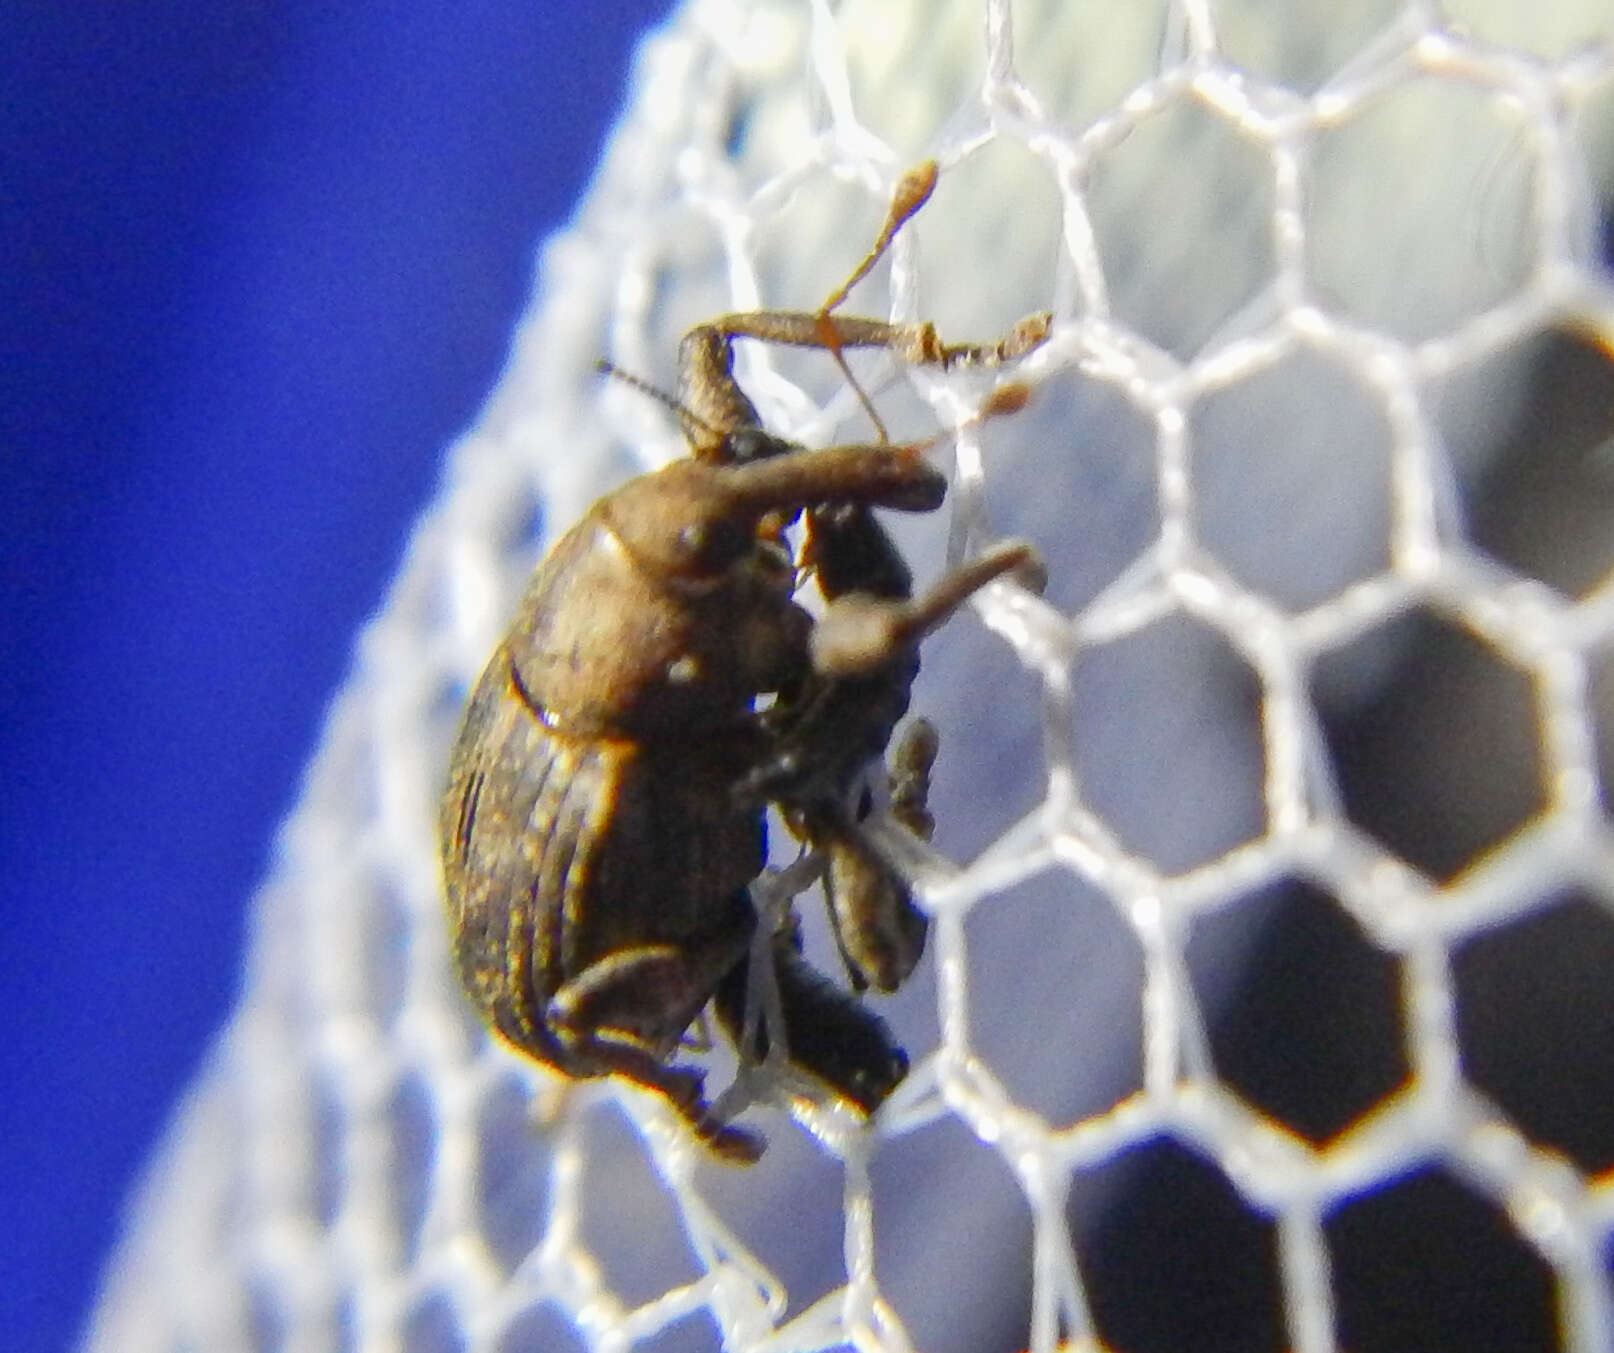 Image of Waterhyacinth Weevils